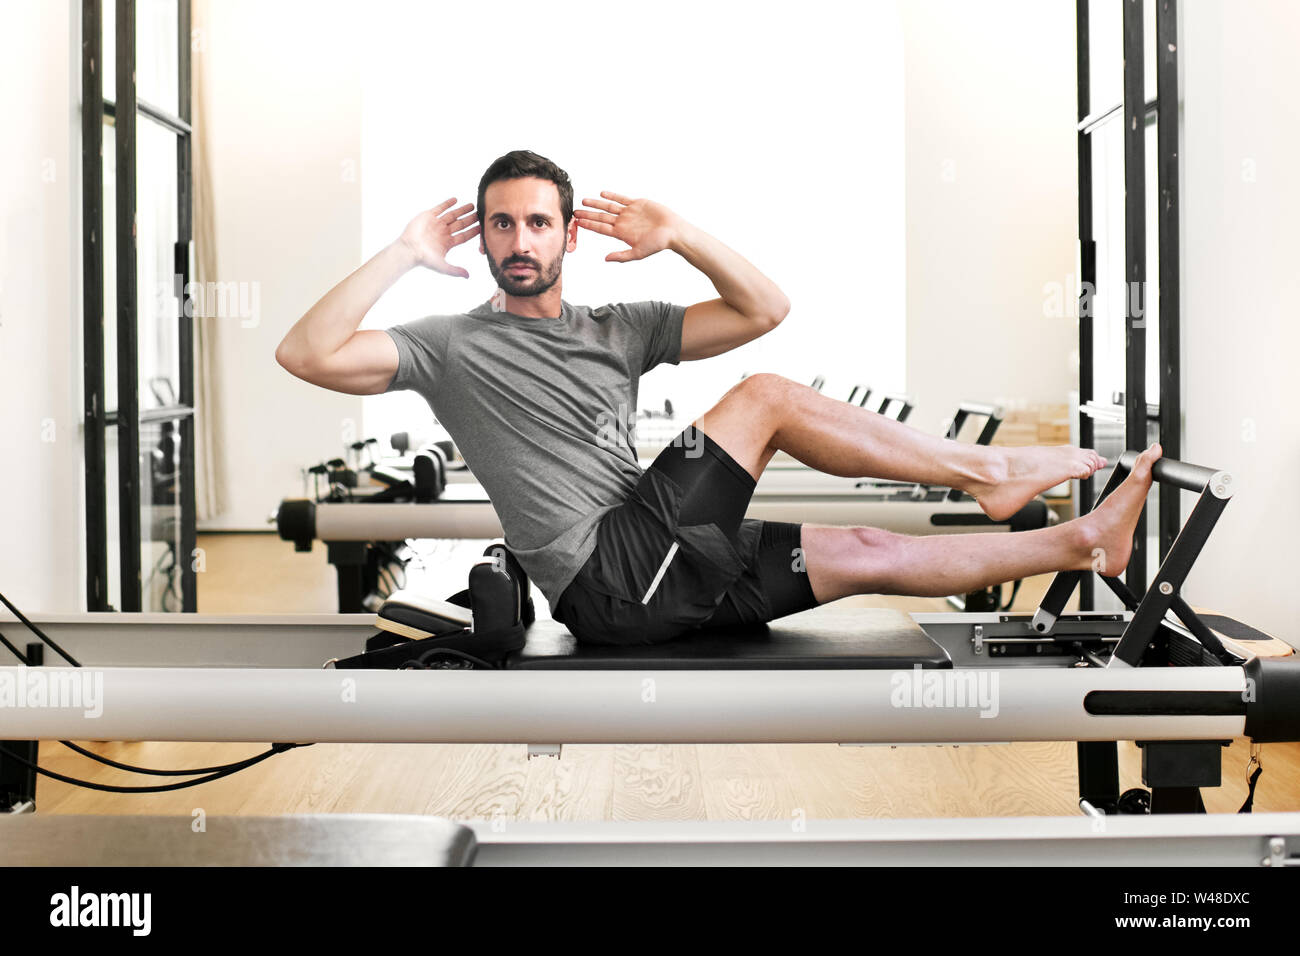 Mann Durchführen einer pilates Single leg stretch Übung auf ein Reformer Bett in einem Fitnessstudio ein Verdrehen der Kamera zu strecken und Ton die Abdominal- Muskeln zu Gesicht Stockfoto